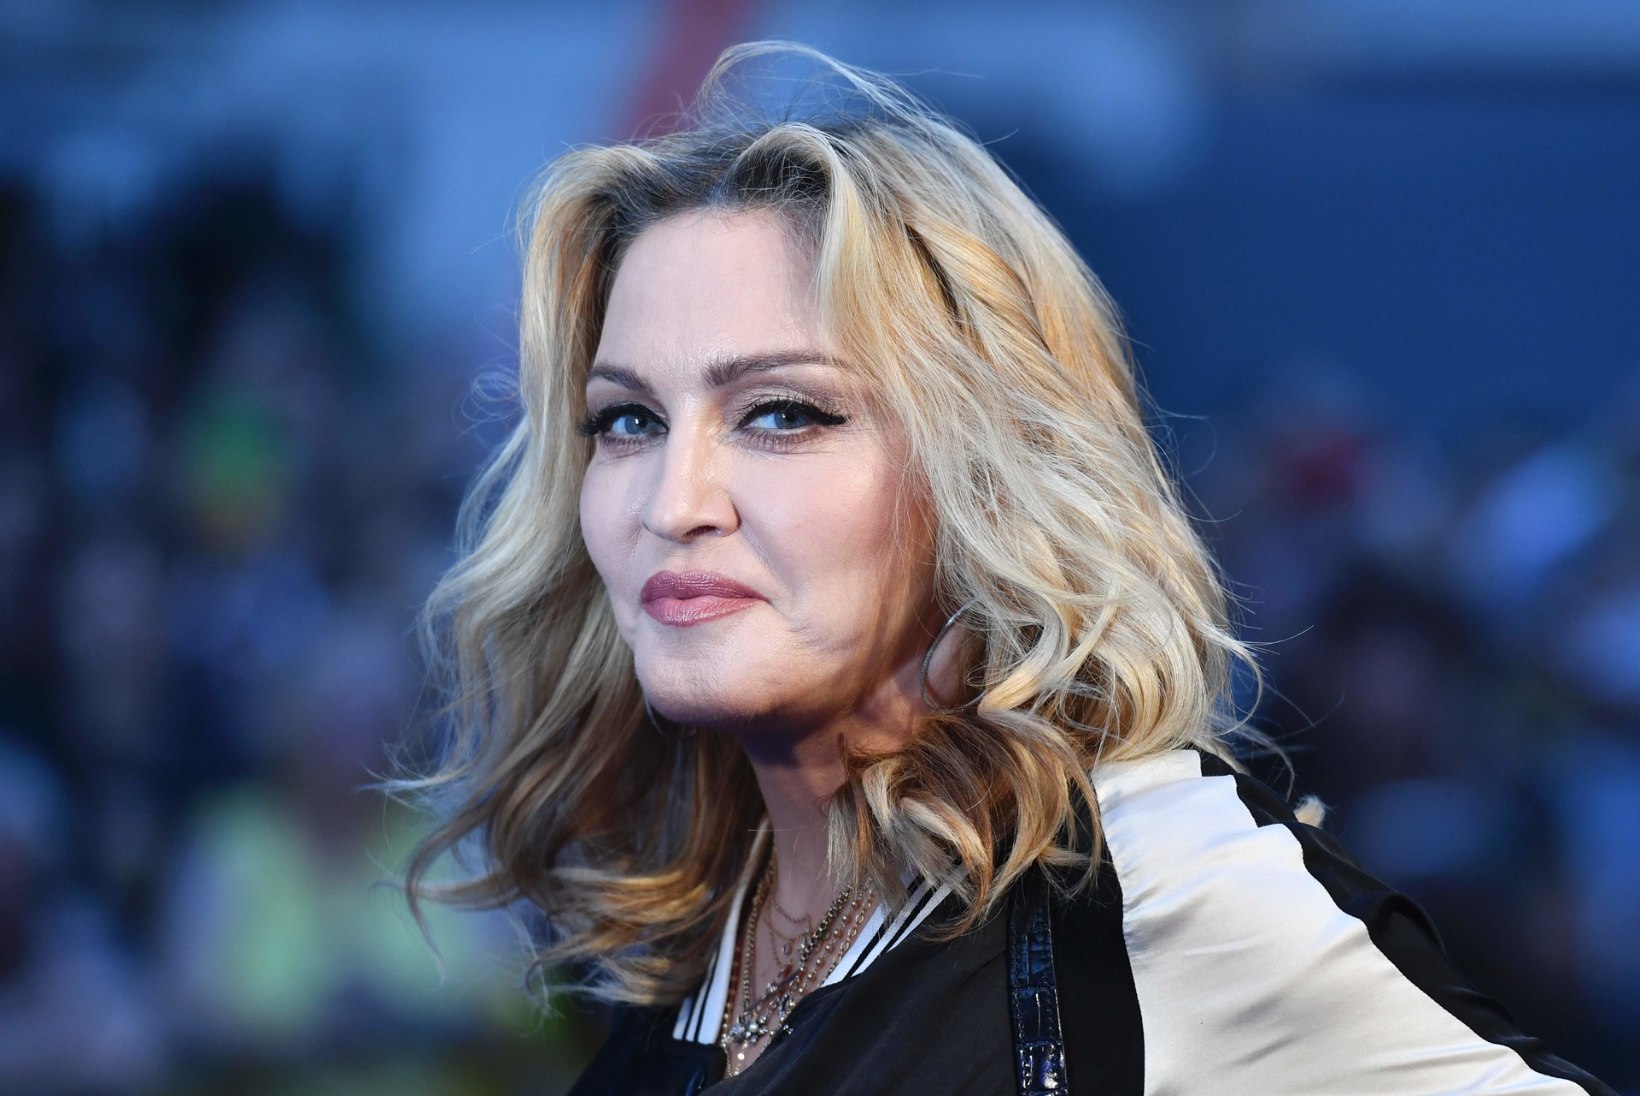 Madonna väntab filmi kuulsa baleriini dramaatilisest elust